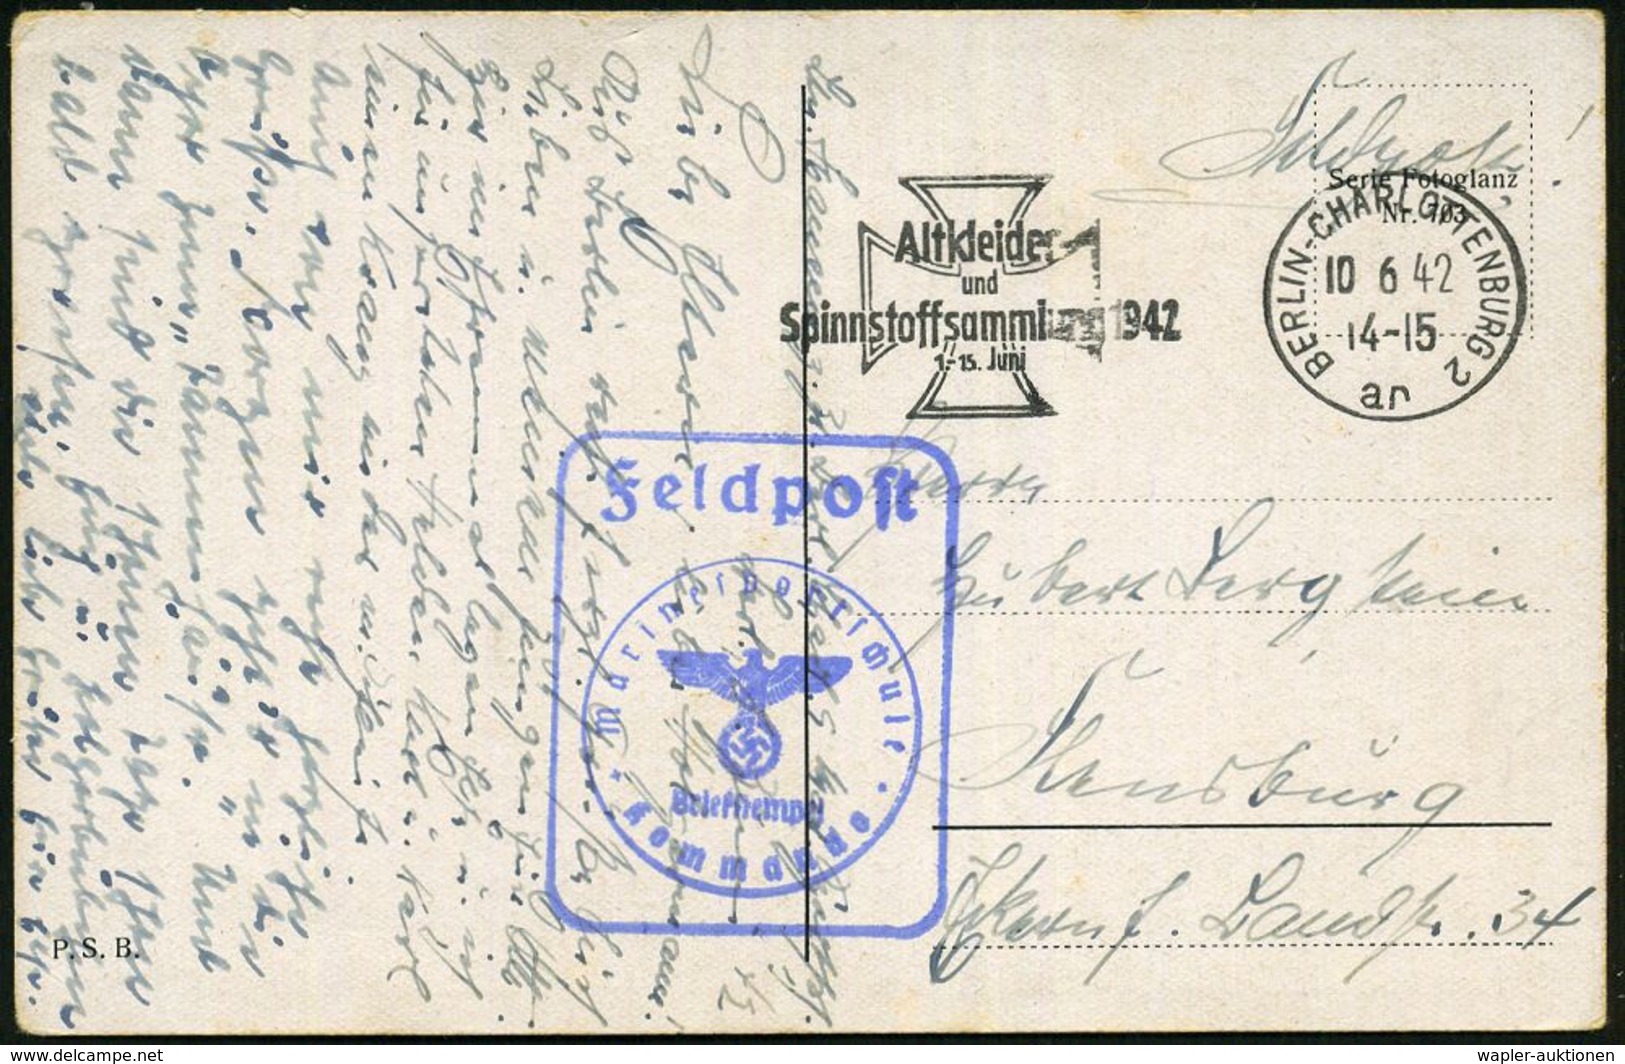 BERLIN-CHARLOTTENBURG 2/ Ar/ Altkleider/ Und/ Spinnstoffsammlung 1942 (10.6.) Seltener MWSt (Eisernes Kreuz) + Blauer Ra - Marittimi